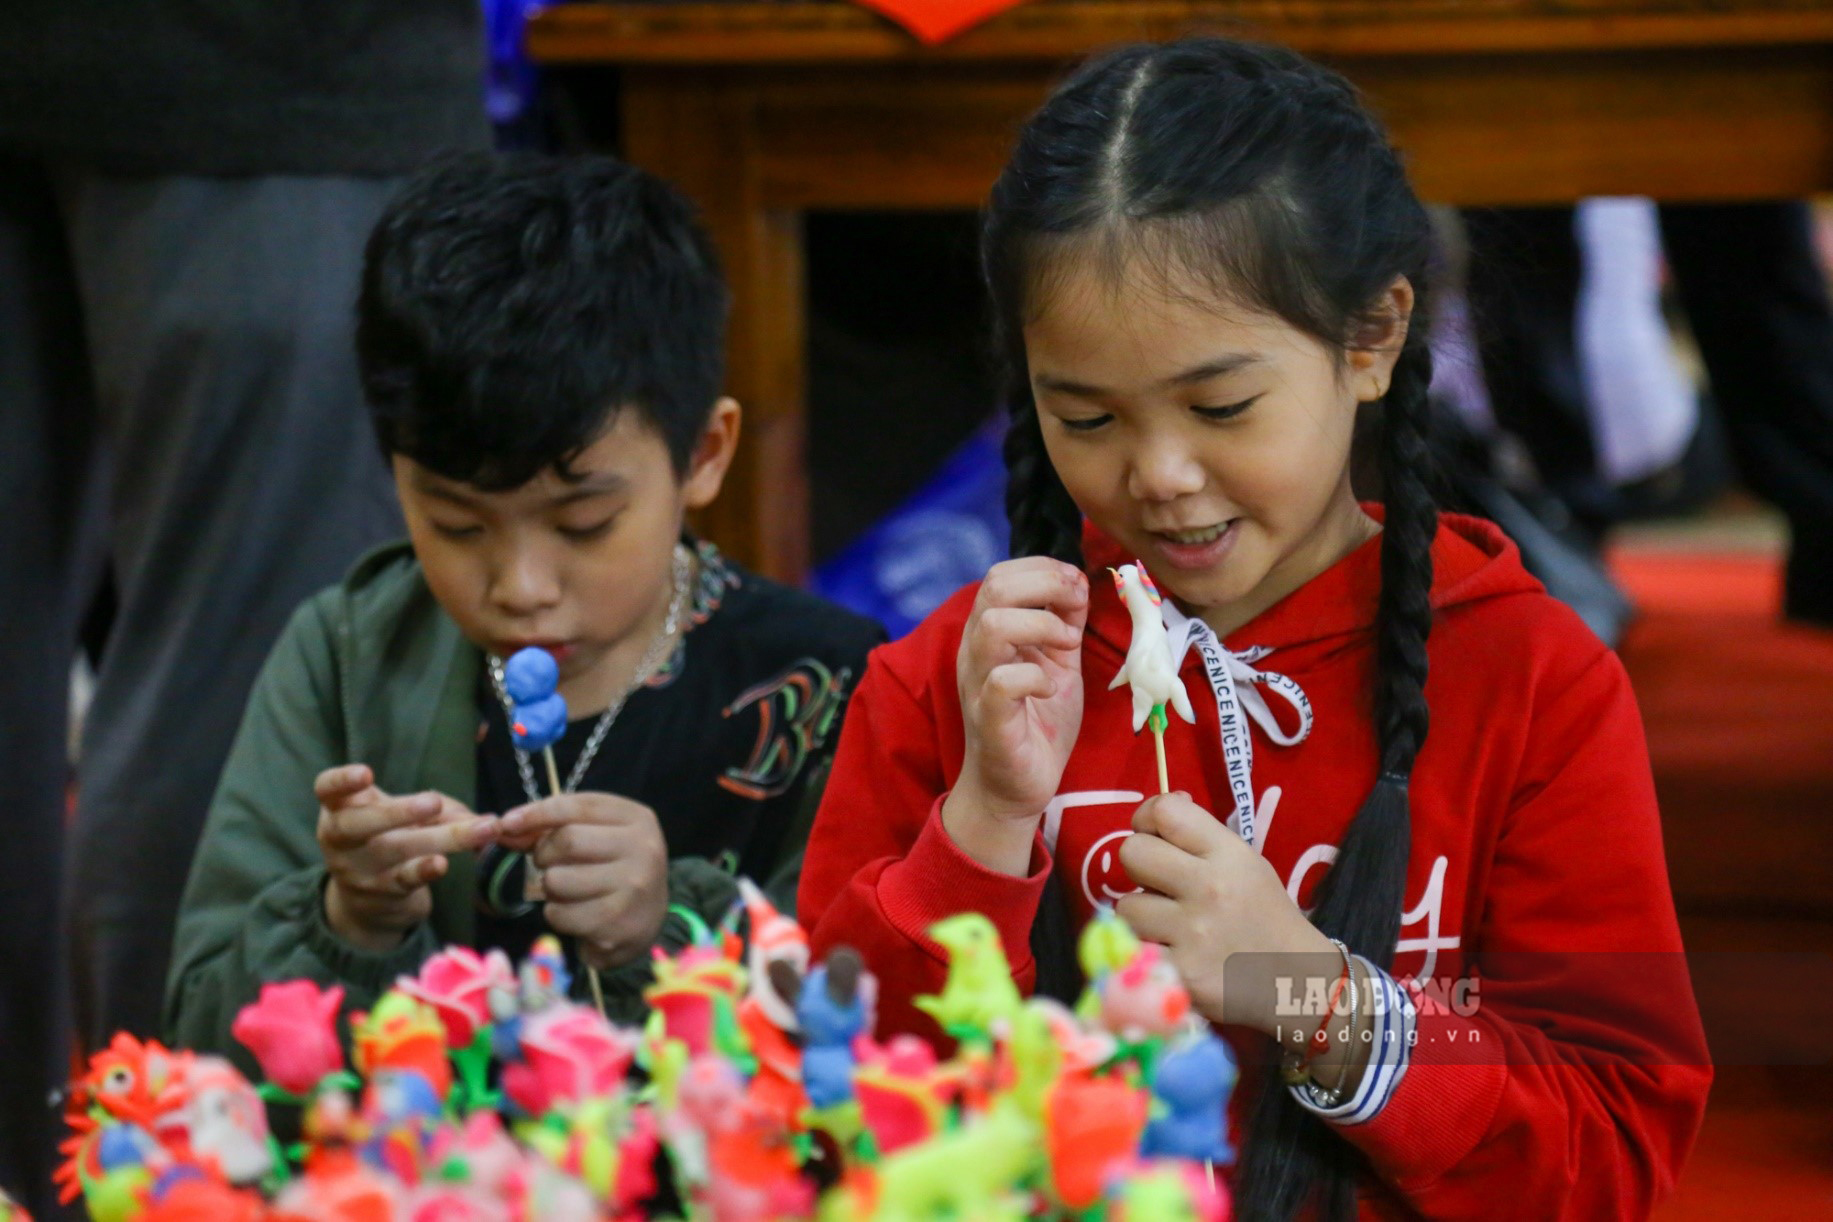 Dịp này, các em nhỏ được người lớn đưa đến trải nghiệm các hoạt động ,trò chơi truyền thống để hiểu thêm giá trị của ngày Tết cổ truyền Việt Nam.